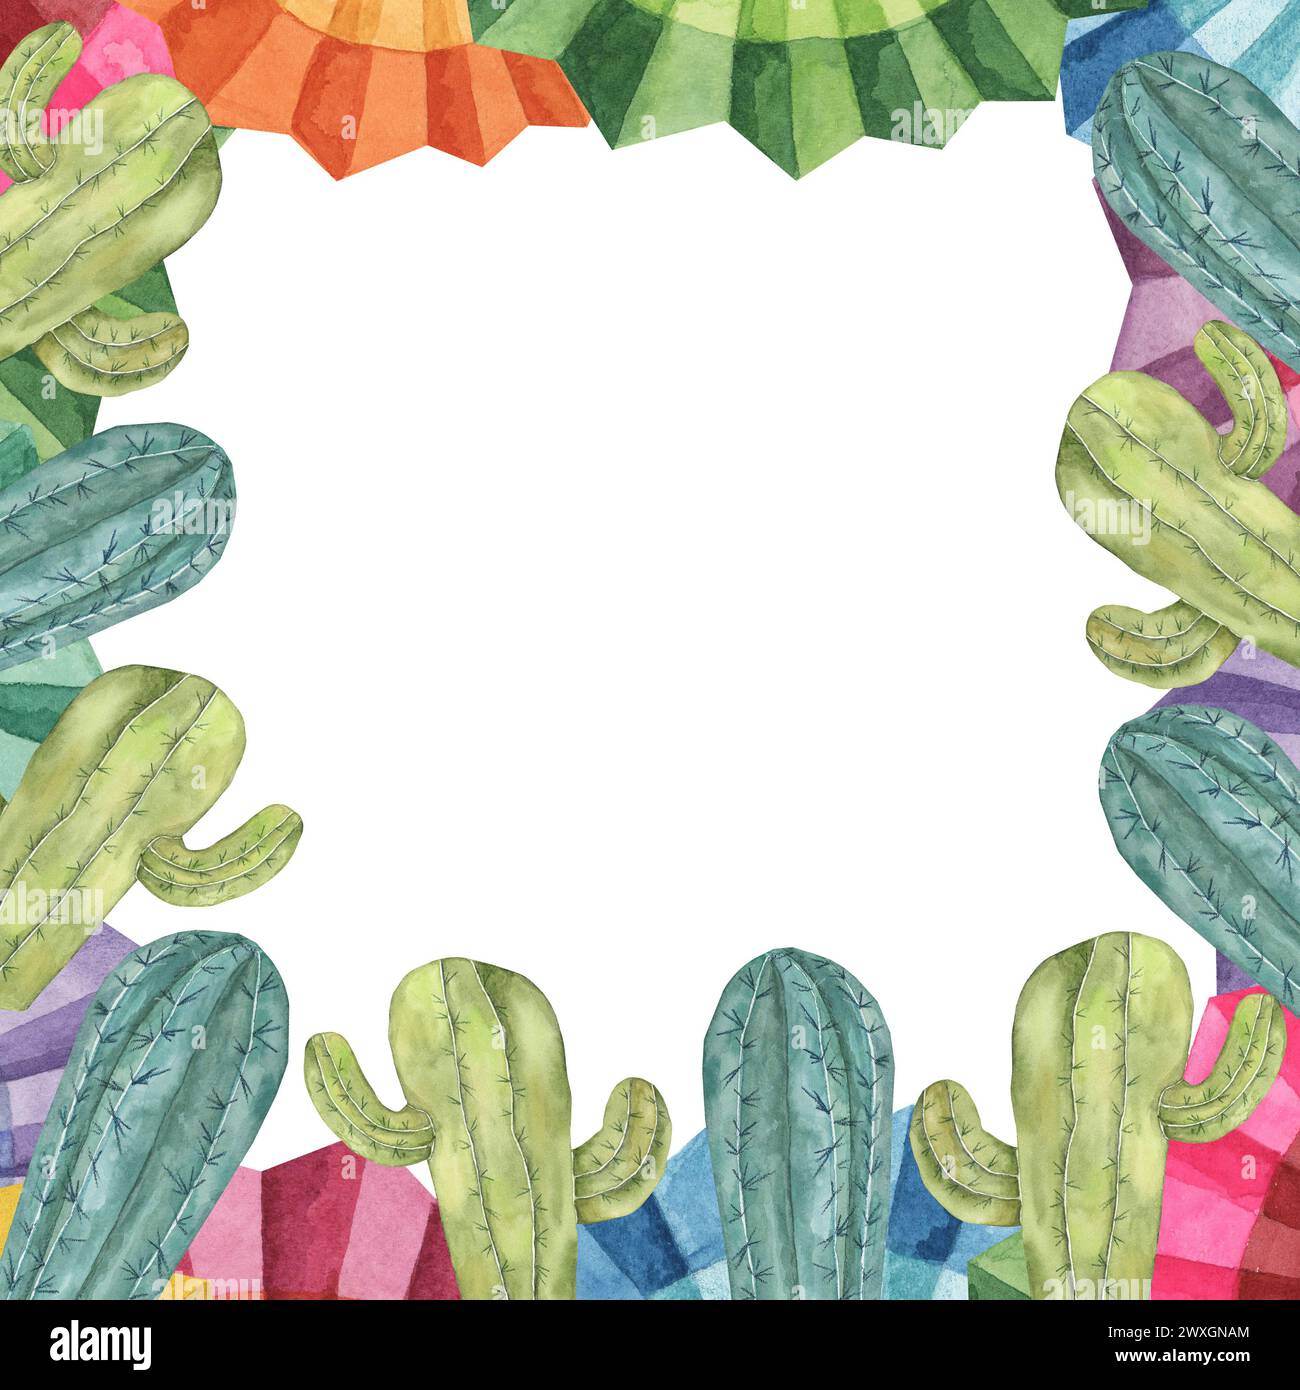 Cornice sagomata quadrata con cactus e ventole di fiori di carta fiesta messicana per Cinco de Mayo. Clipart colorato ad acquerello disegnato a mano. Progettazione geometrica Foto Stock